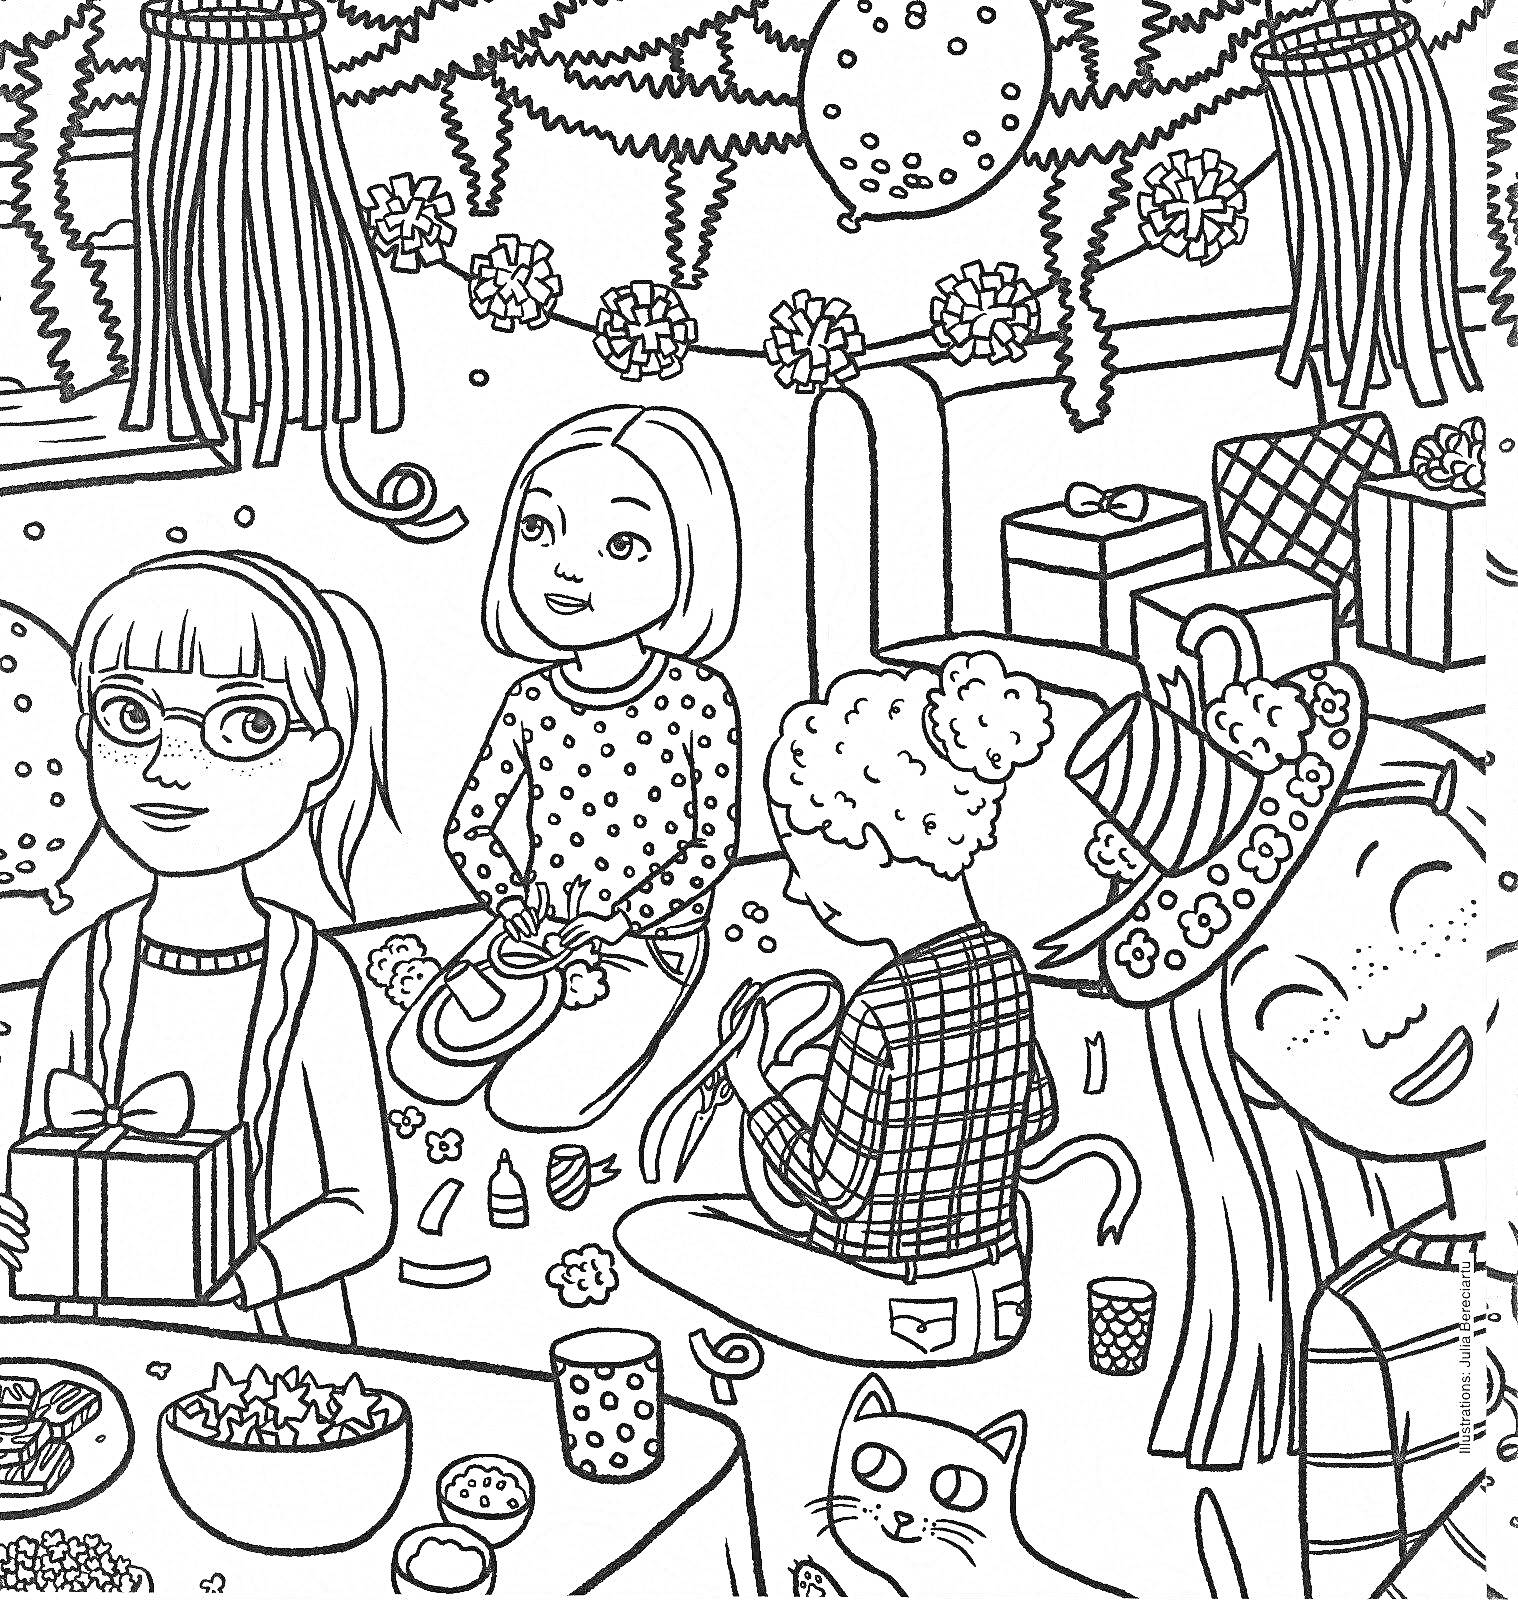 Раскраска Вечеринка с подарками, гирляндами и украшениями. Девочки сидят и распаковывают подарки, на столе стоит миска с попкорном и чашки, на заднем плане висят гирлянды и помпоны, справа изображен кот и украшенная шляпа.